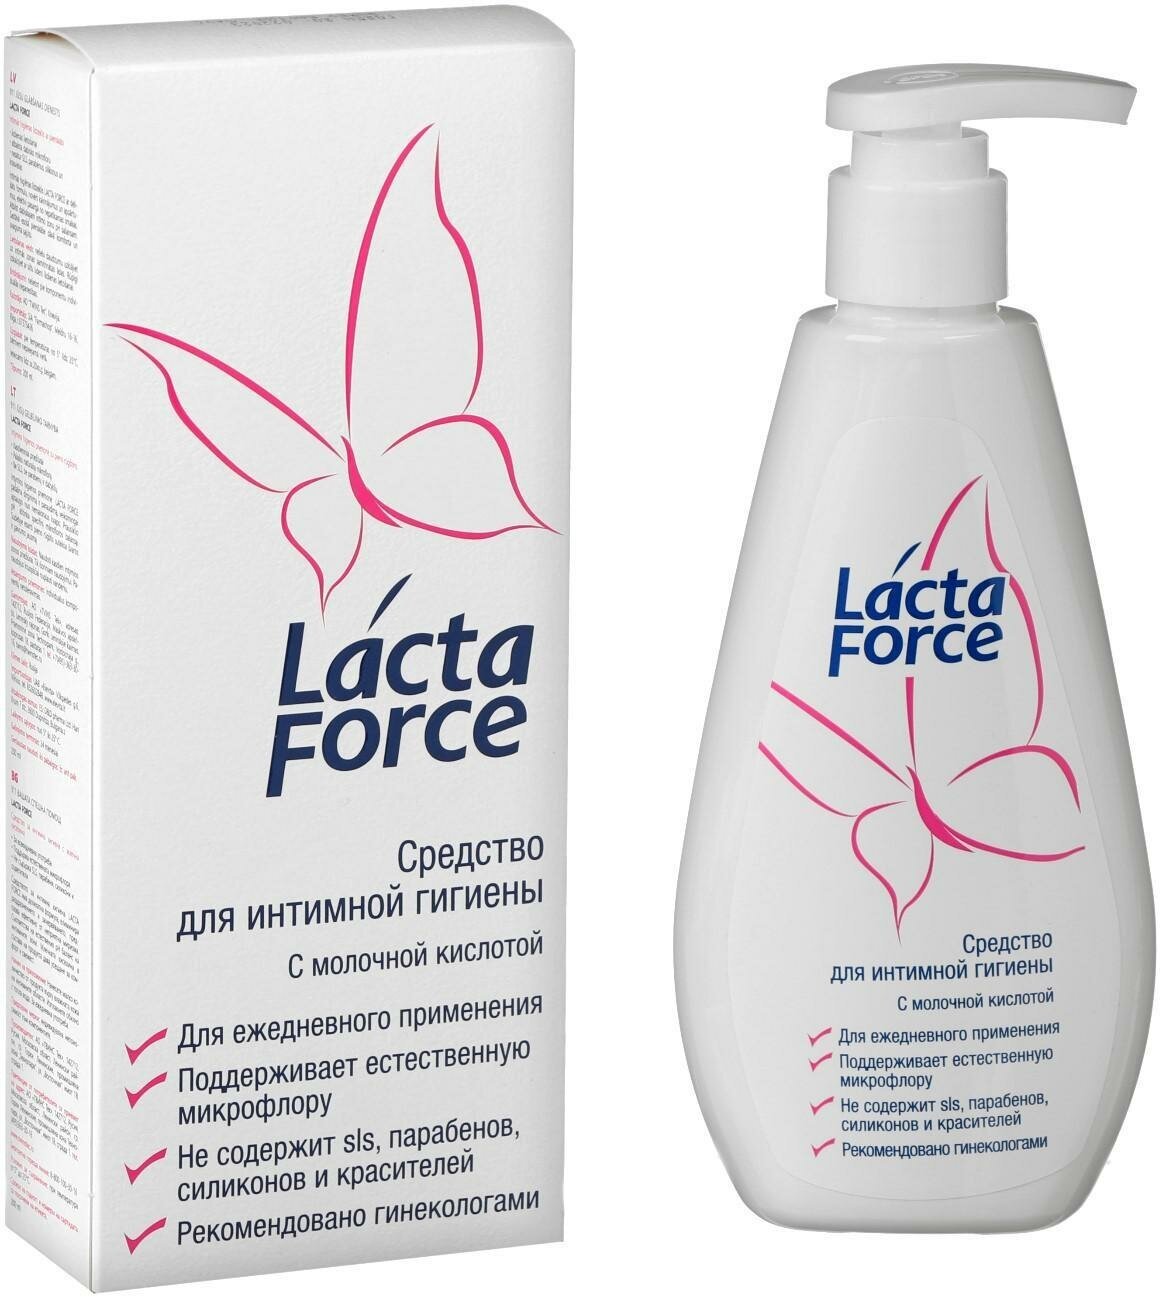 Средство для интимной гигиены Lactaforce с молочной кислотой, 200 мл